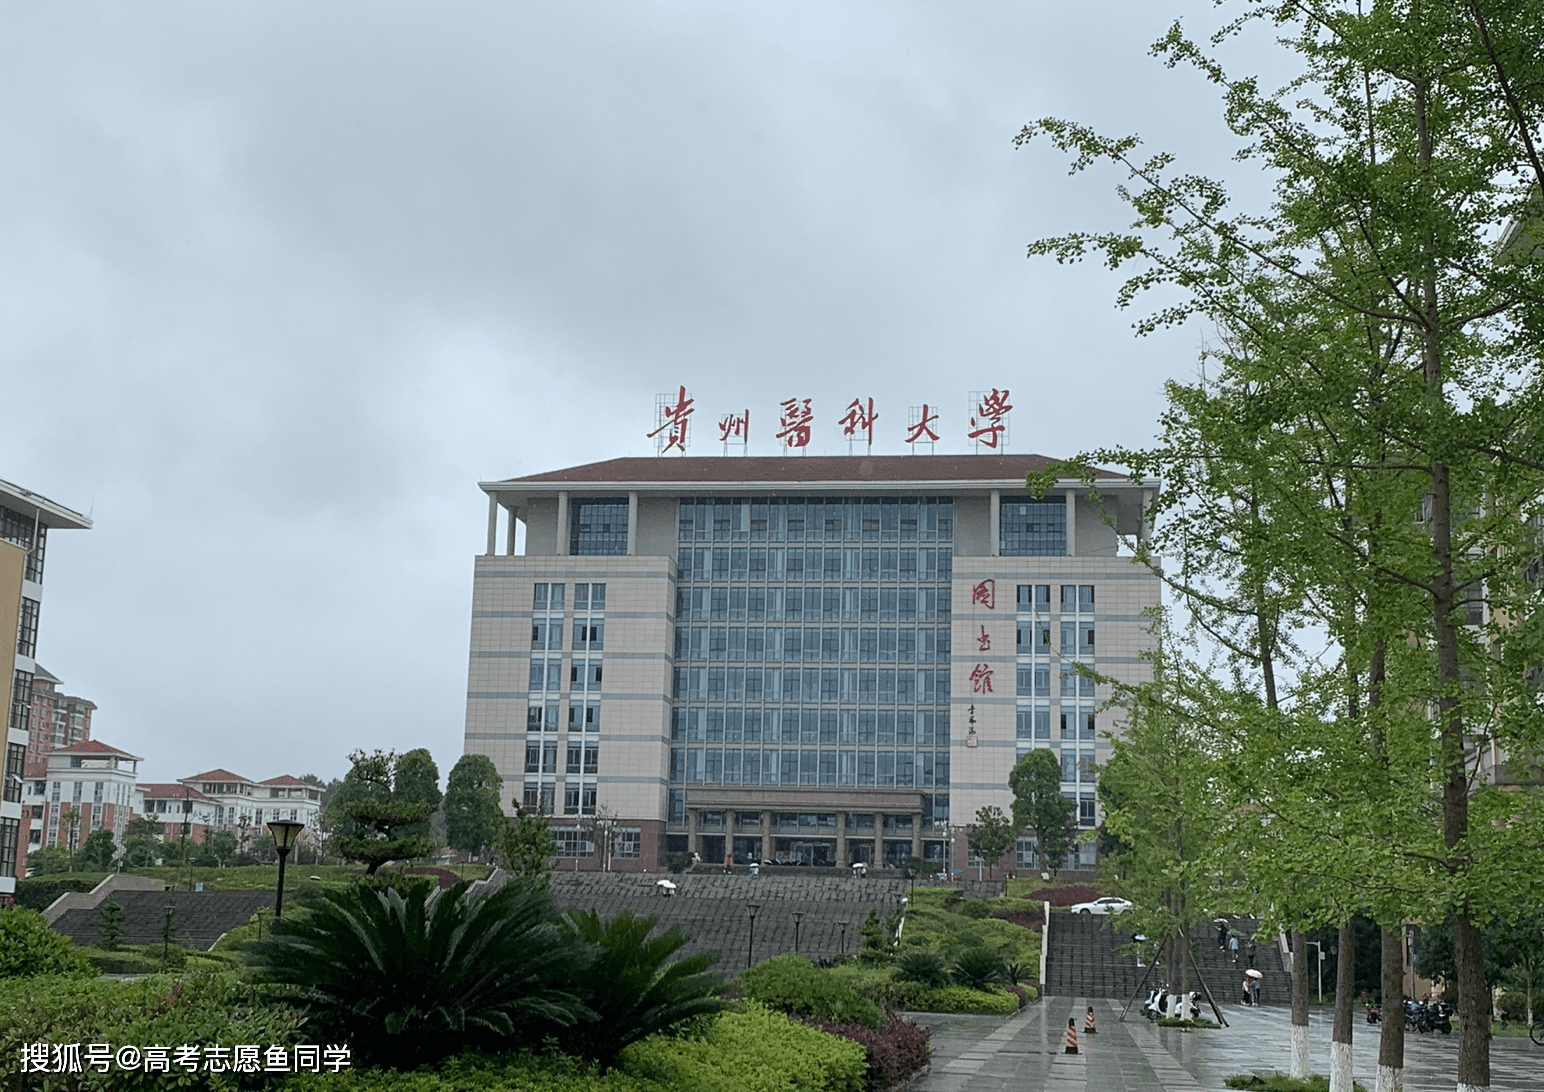 7,贵州医科大学:学校前身是贵阳医学院,改名时间还不算长,不过学校的